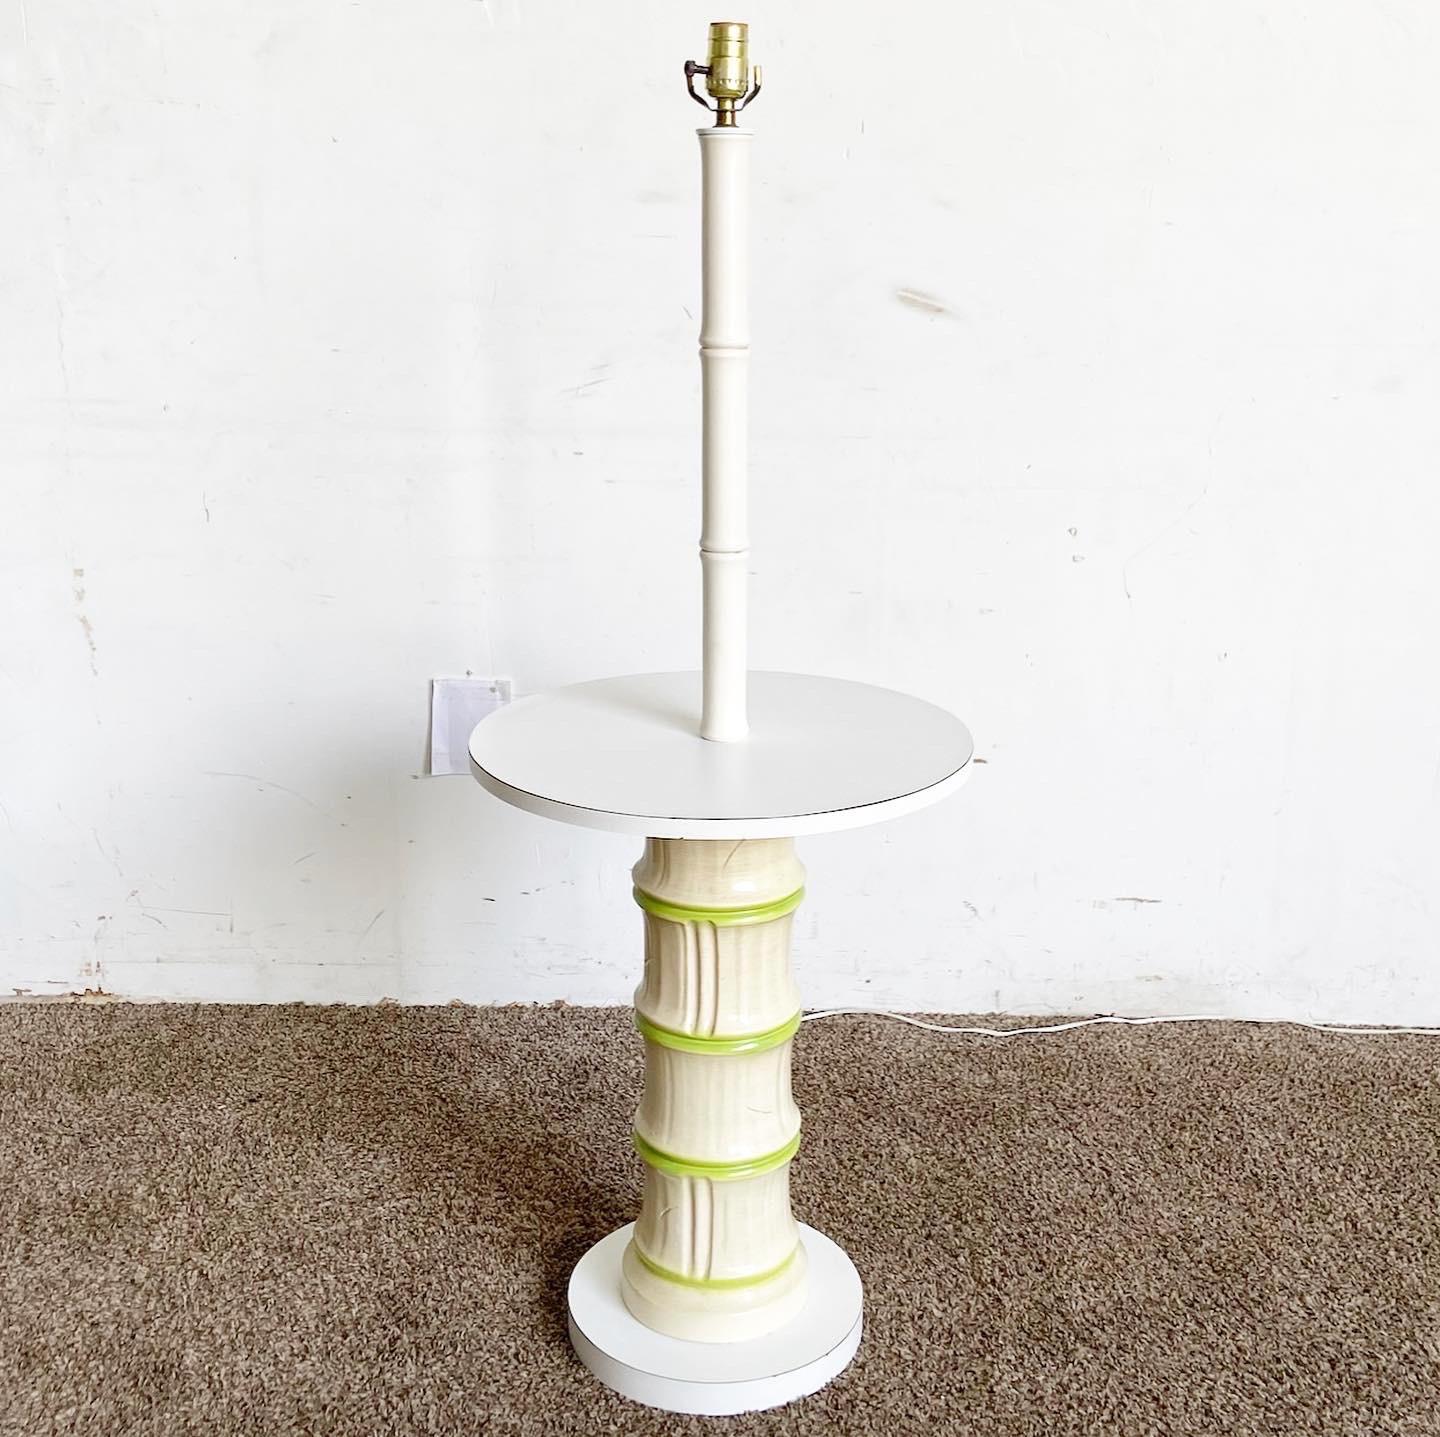 Entdecken Sie die Regency Faux Bamboo Lamp/Table Combo, ein vielseitiges Stück, das sowohl als Stehlampe als auch als Beistelltisch dient. Mit seinem keramischen Stiel und den Details aus Bambusholzimitat verbindet dieser Artikel klassische Eleganz